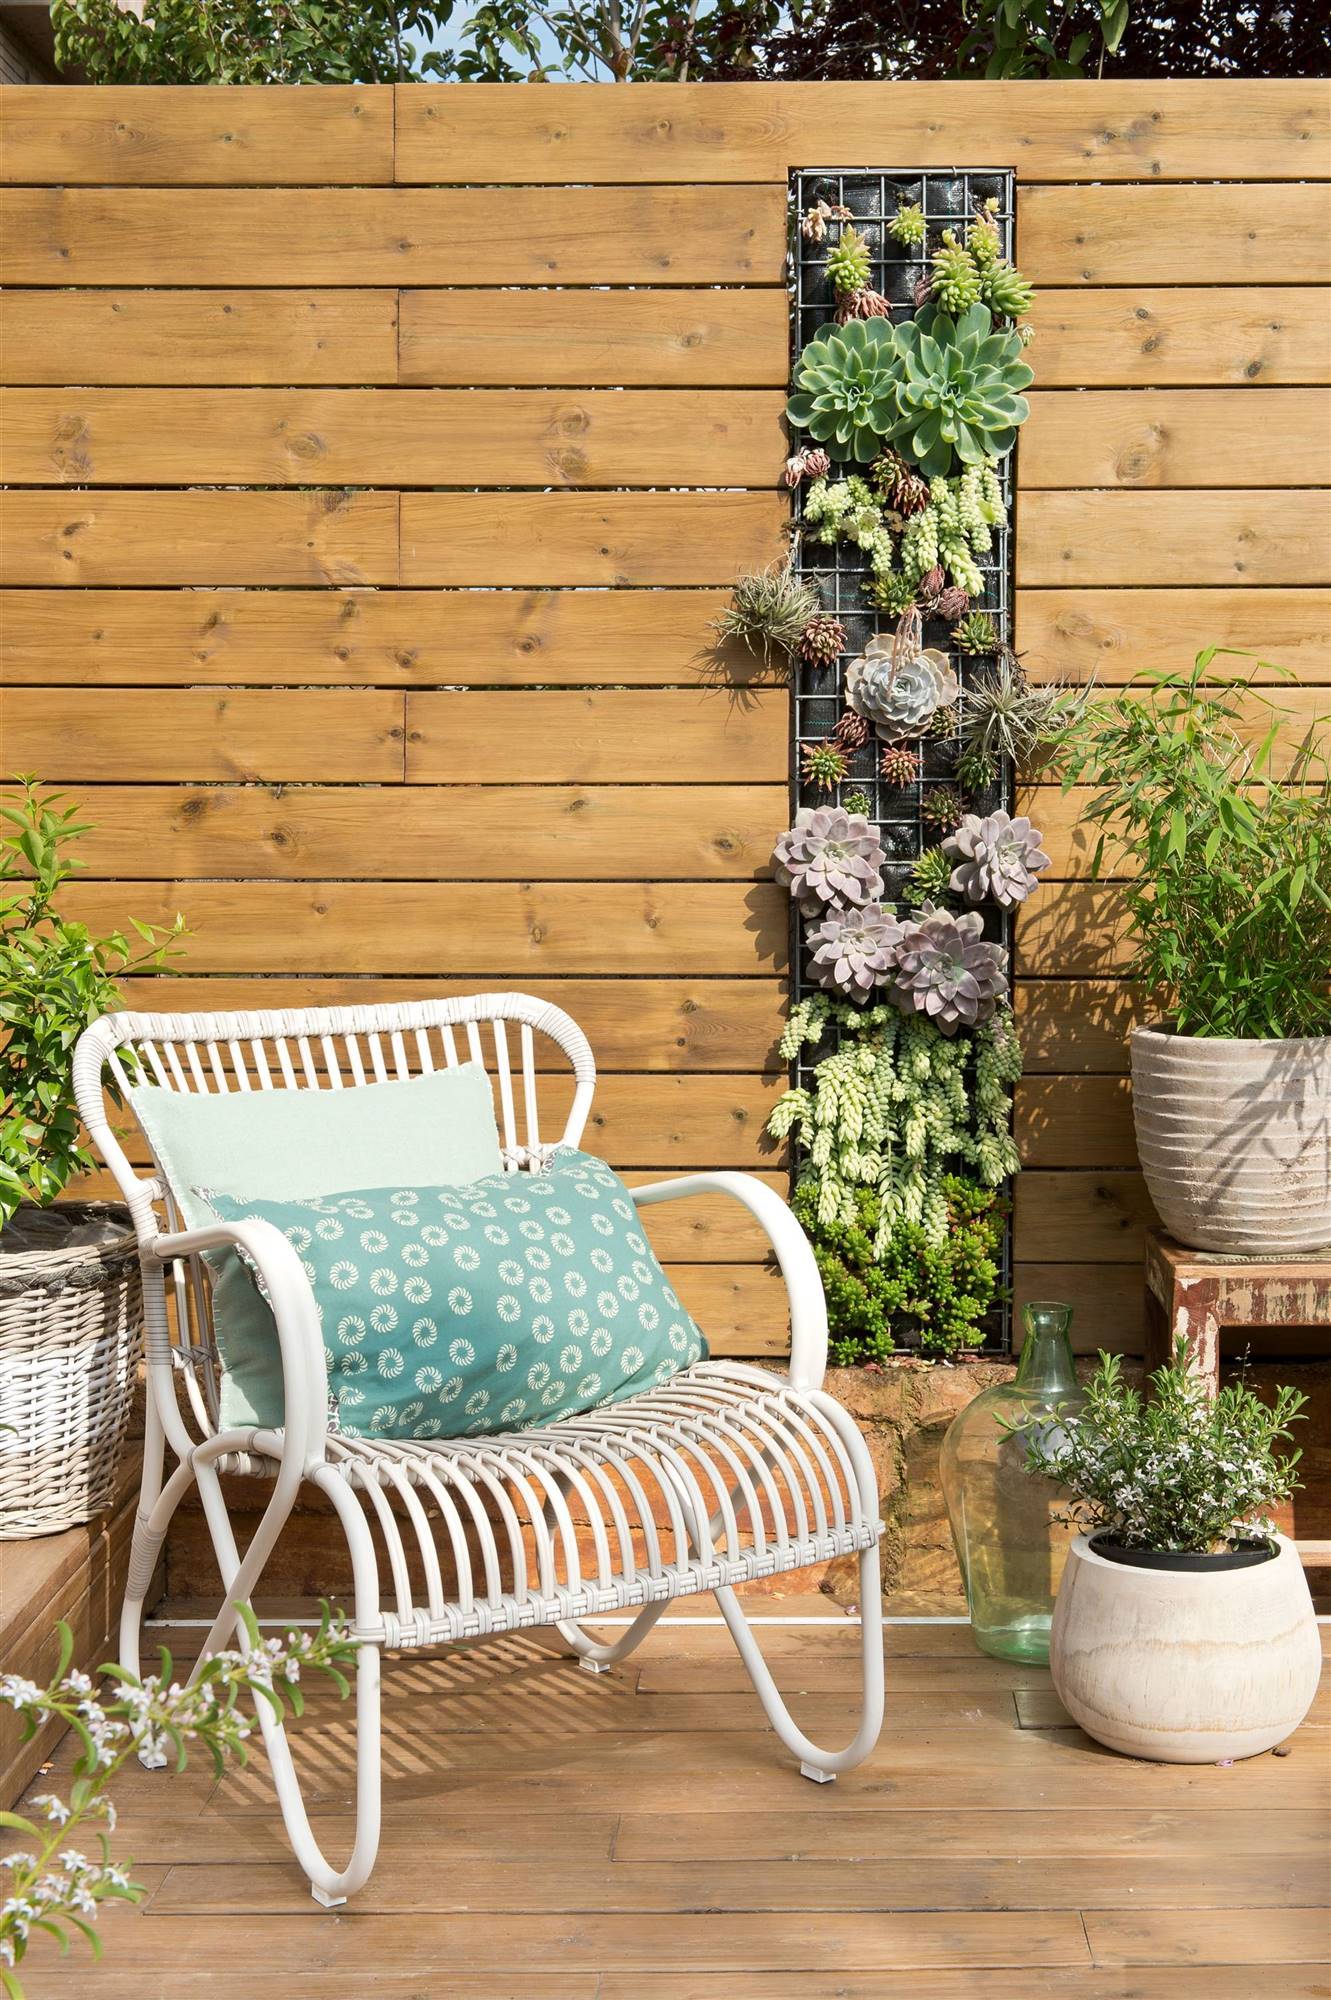 Terraza panelada de madera con jardín vertical y butaca blanca 00406475_O